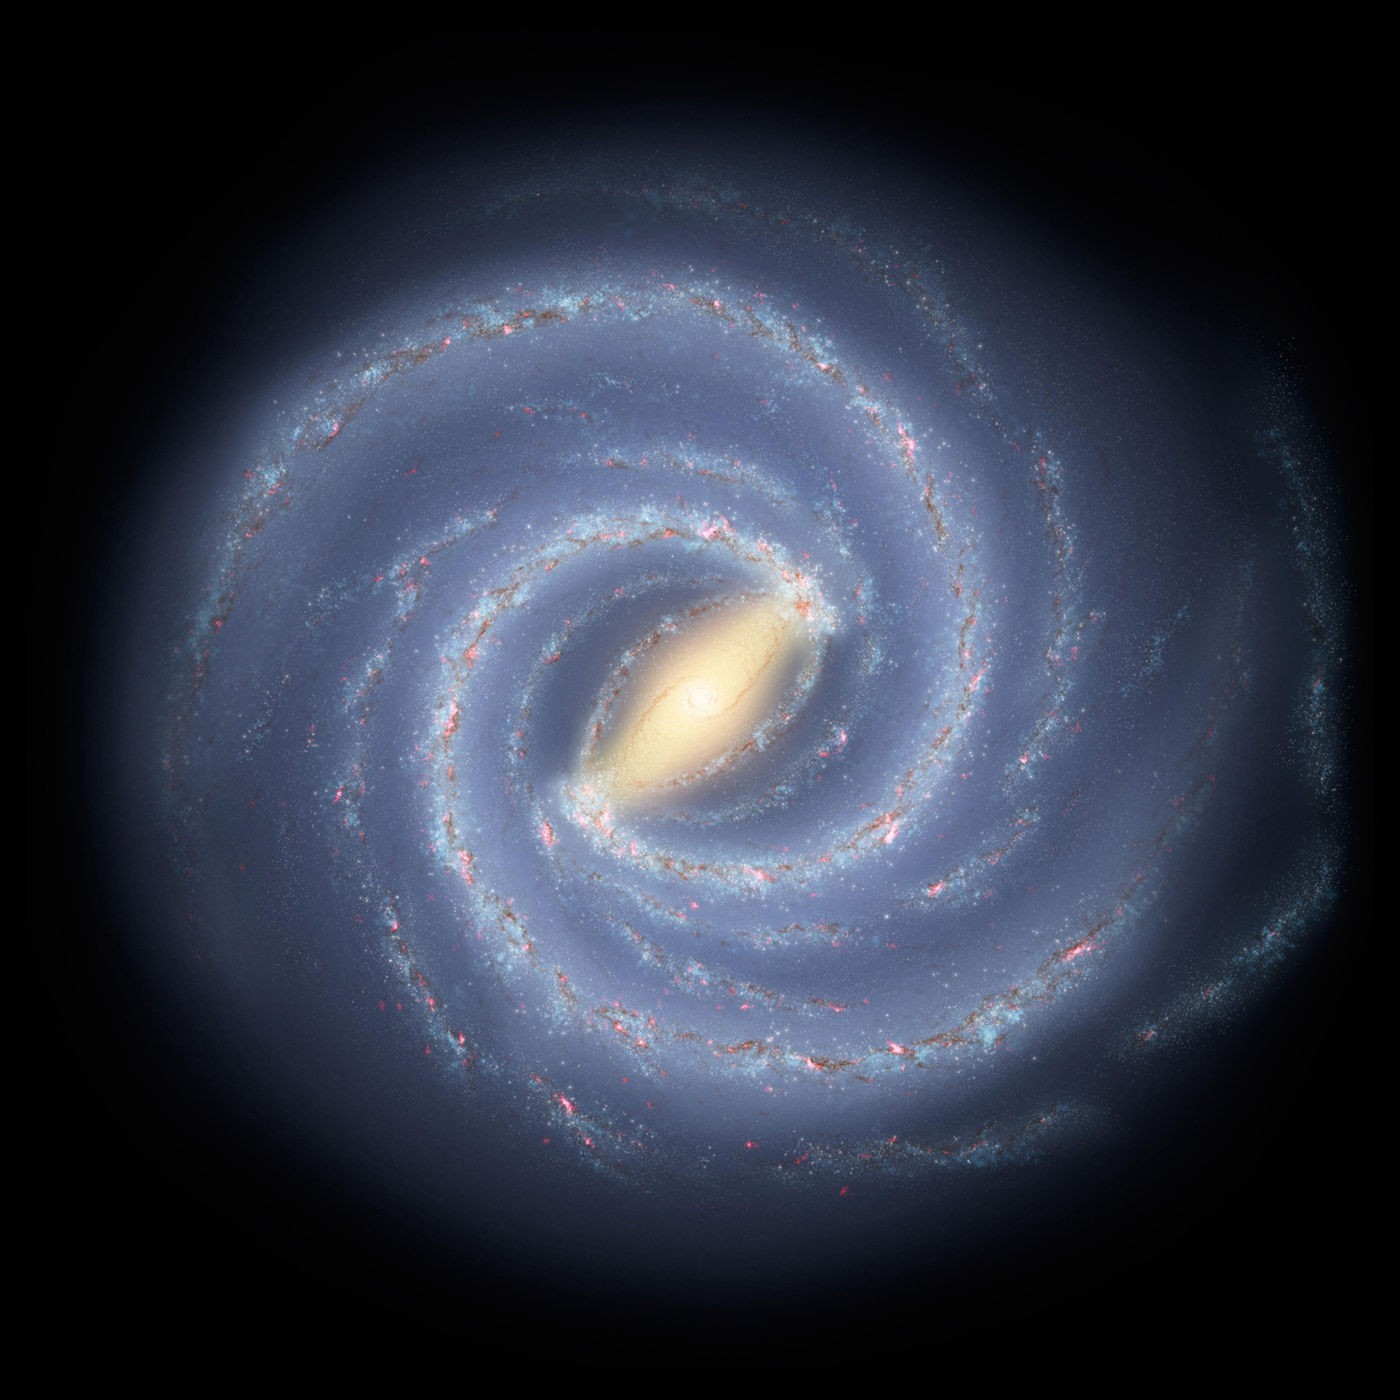 Representação da Via Láctea, com seus quatro grandes braços espirais (Foto: NASA/JPL-CALTECH)